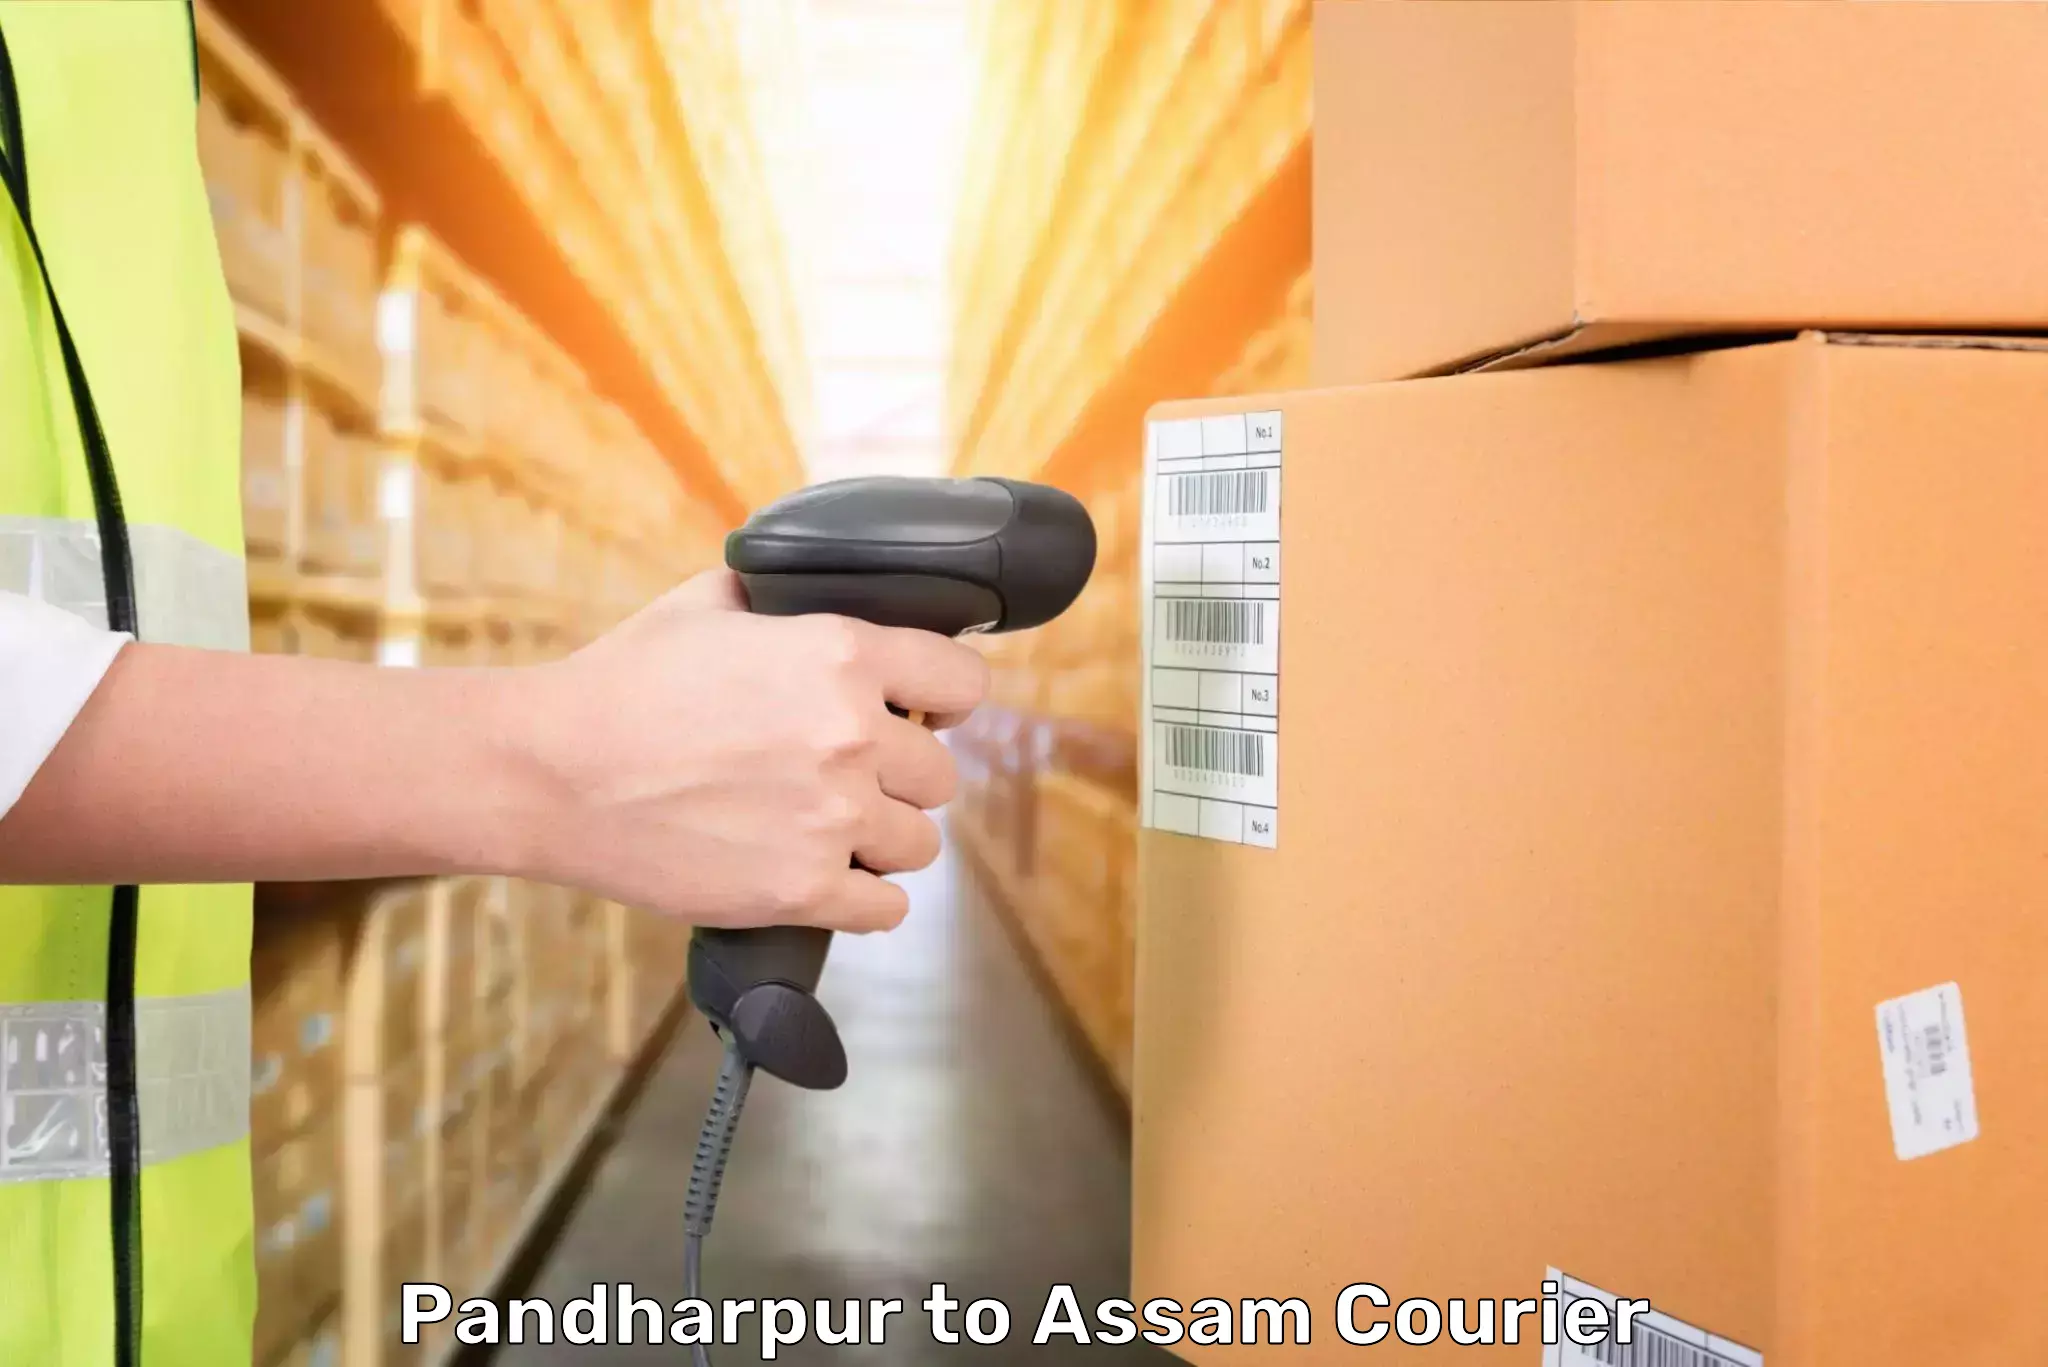 Baggage shipping experience in Pandharpur to Majuli